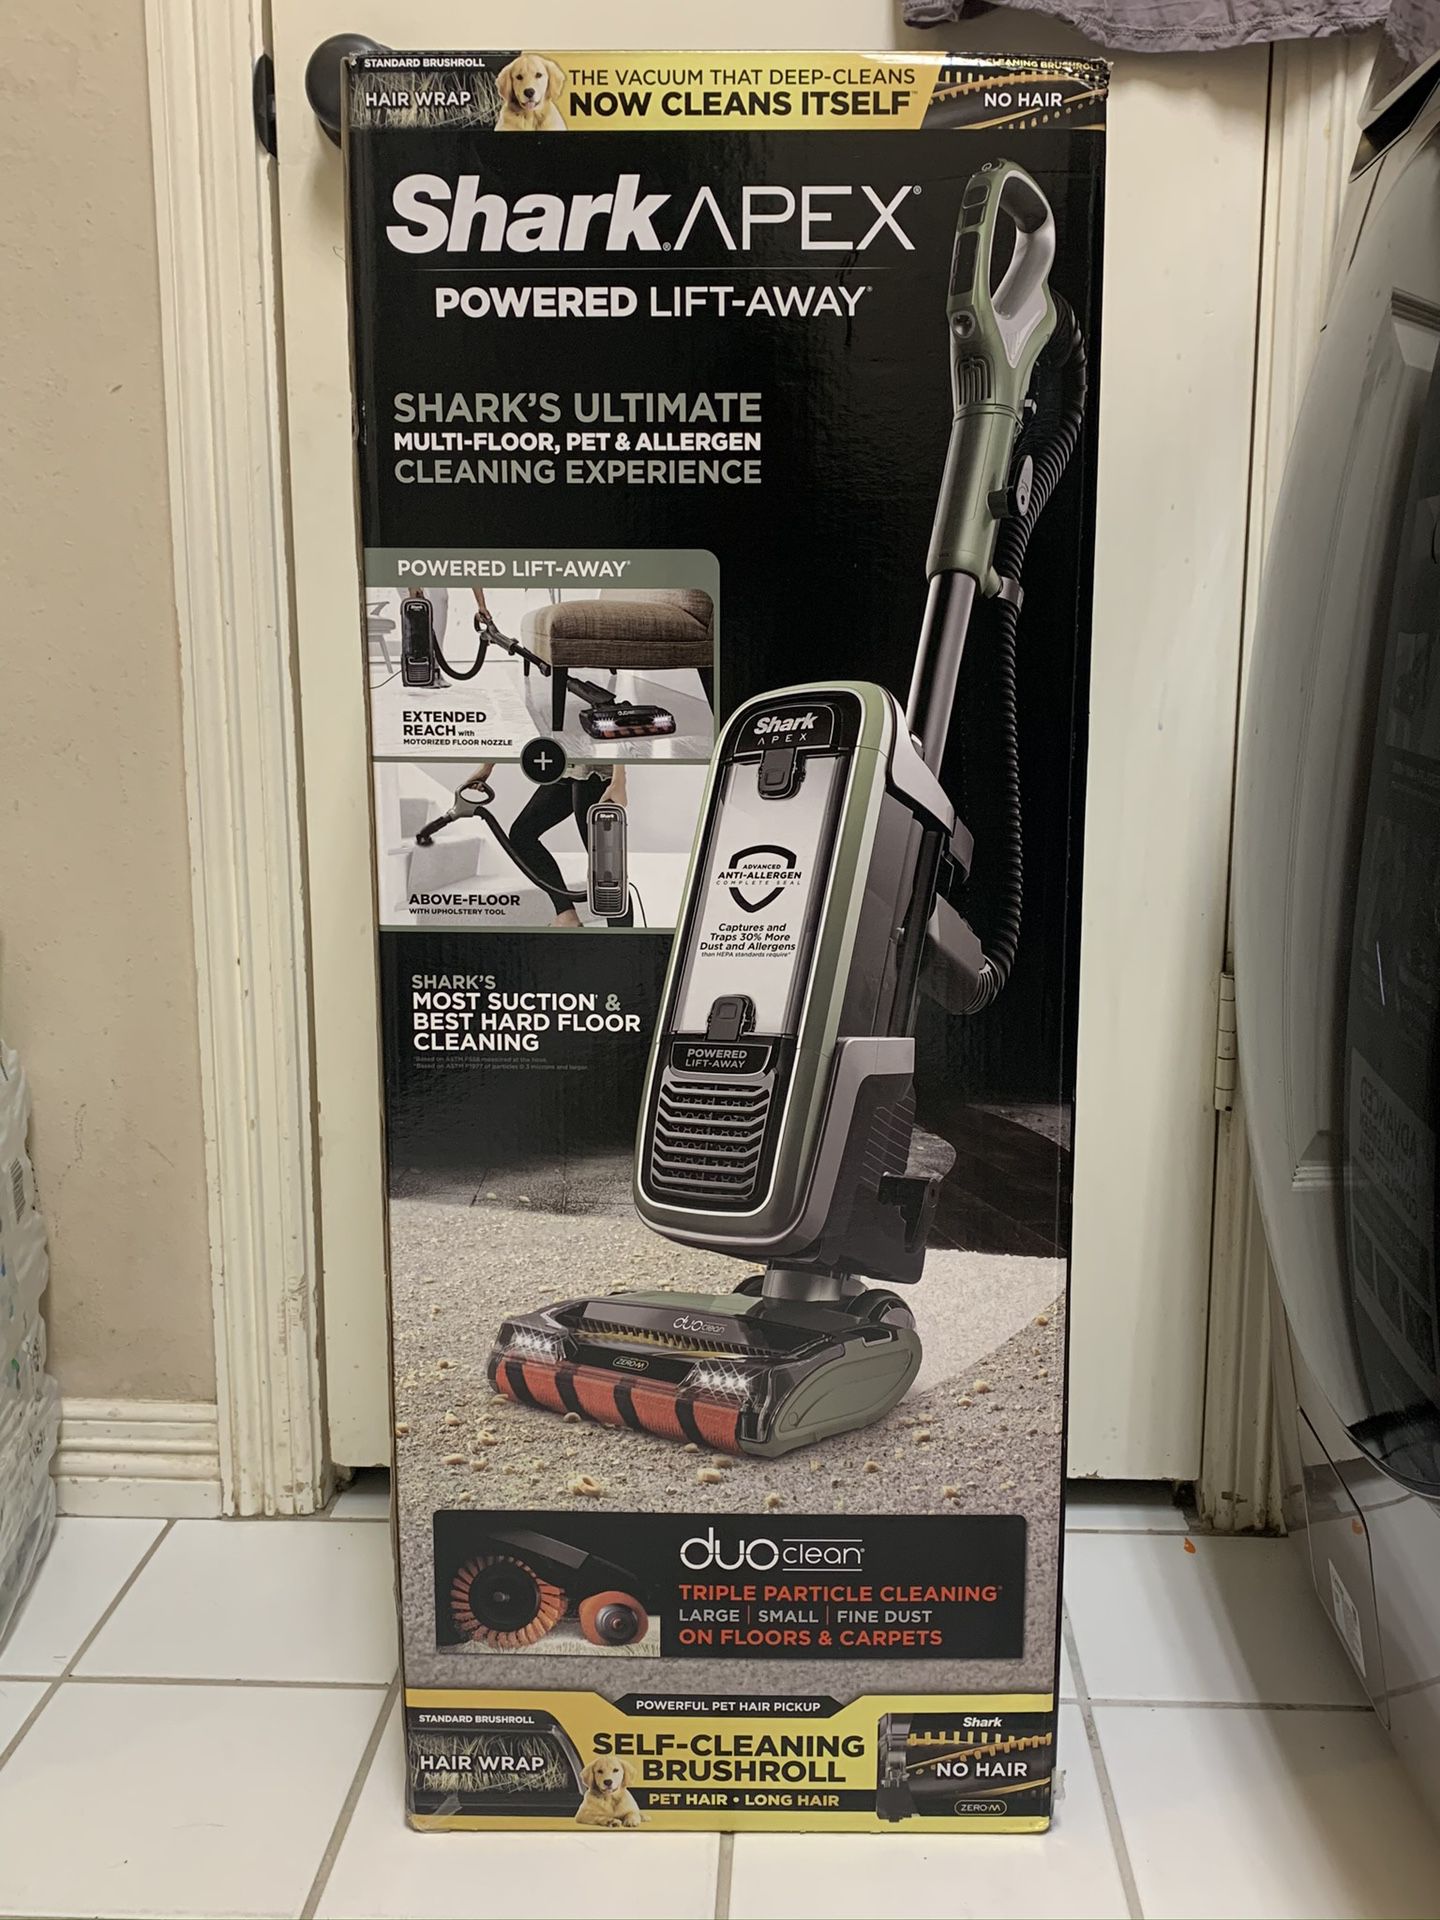 Shark Apex vacuum cleaner